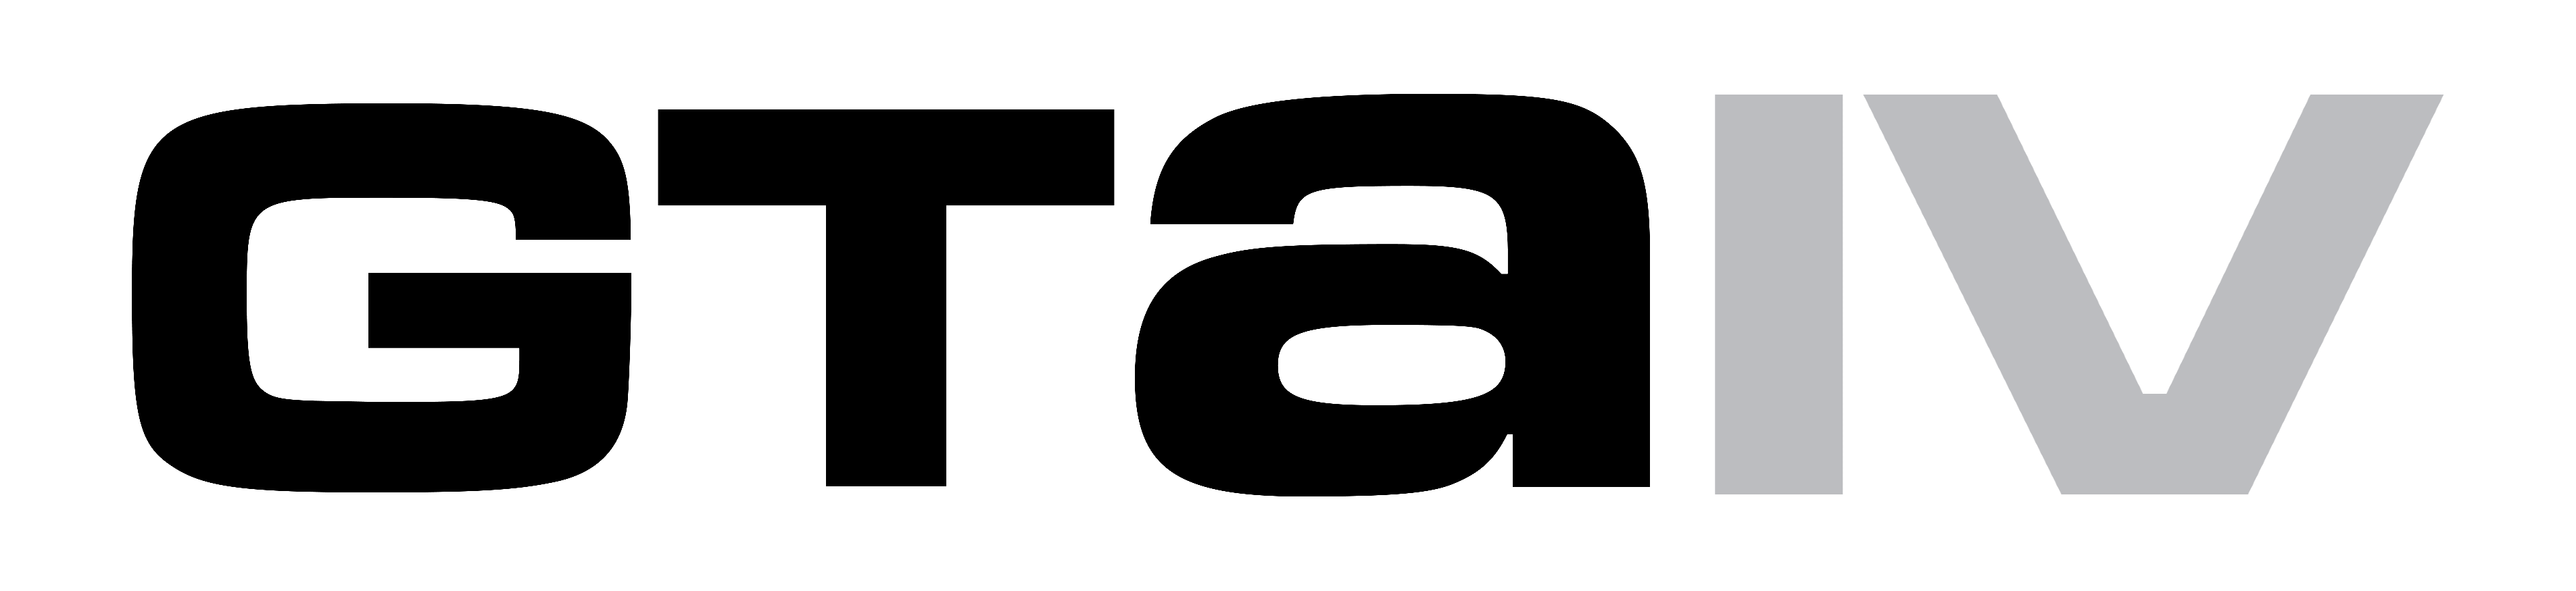 gta 4 logo png